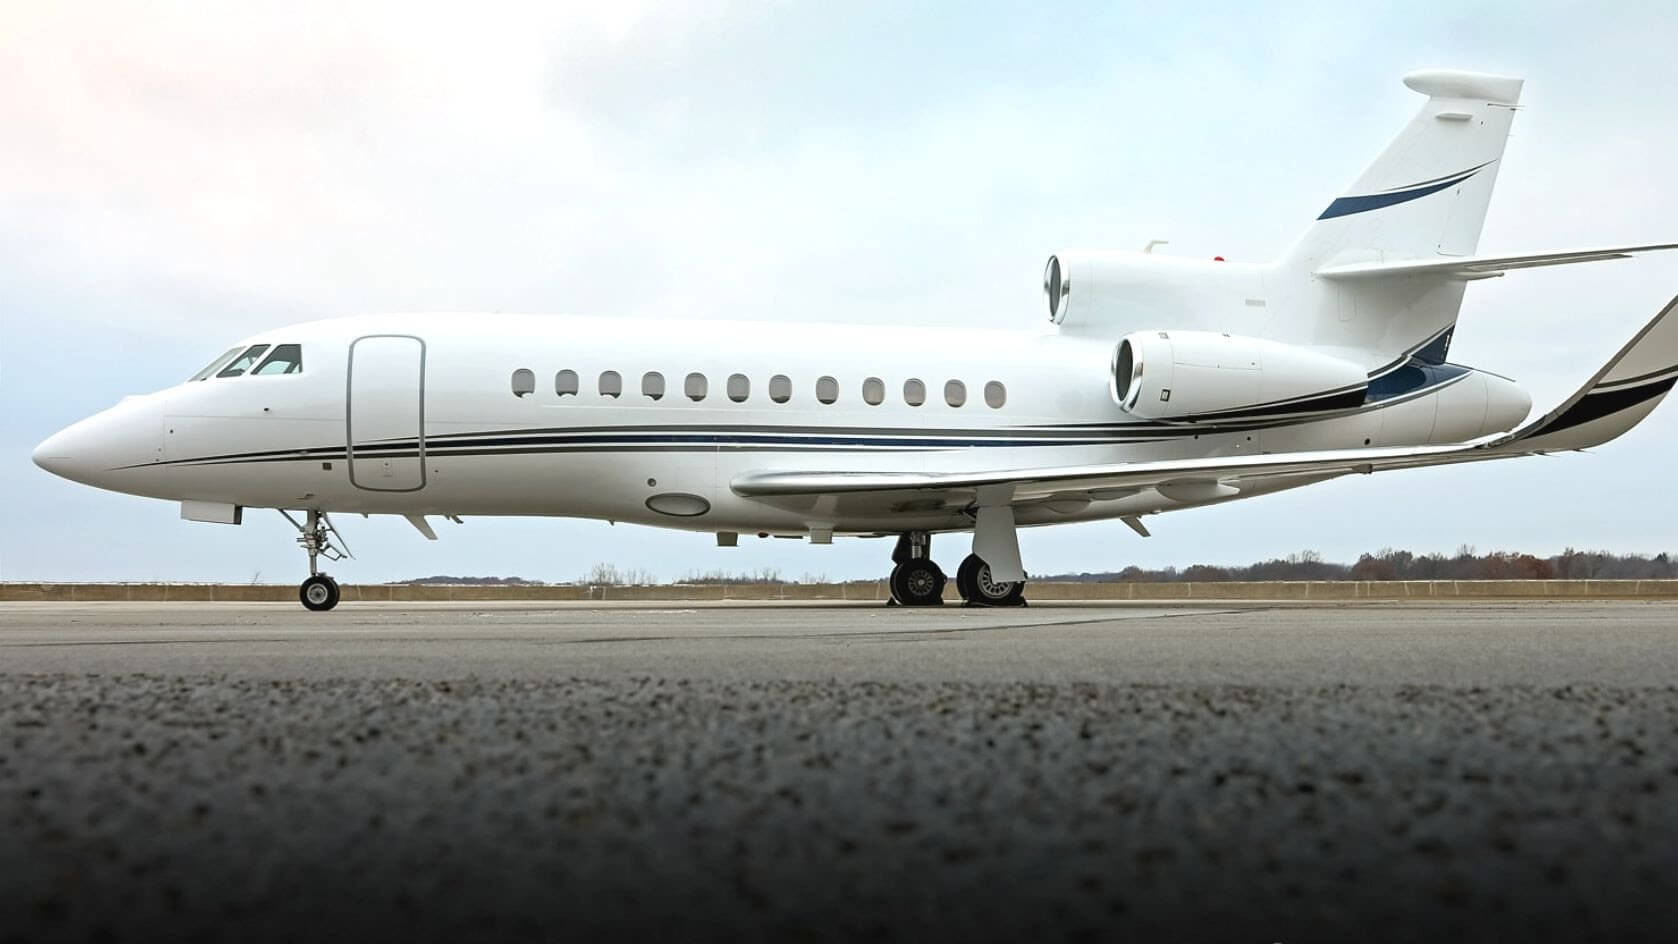 2010 FALCON 900LX - Heavy Jet - Wonders of Luxury